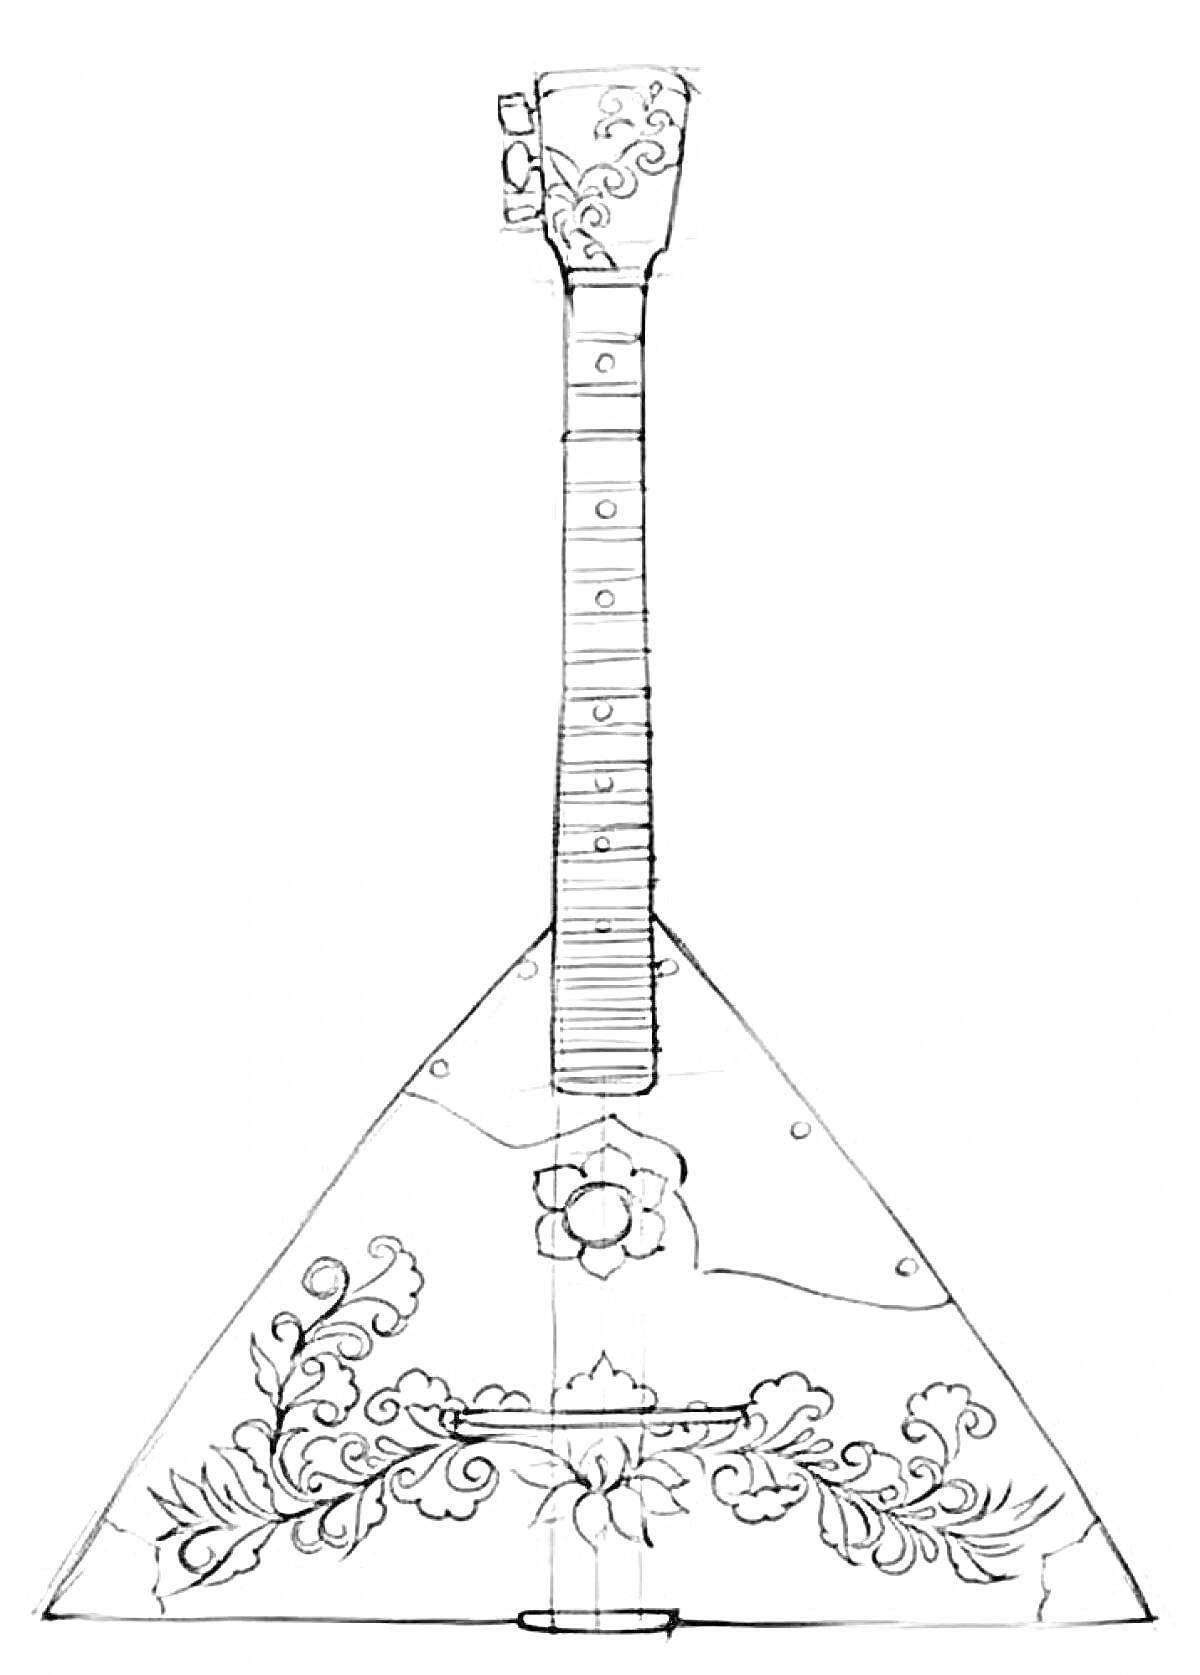 Раскраска Балалайка с декоративными узорами по корпусу и грифу